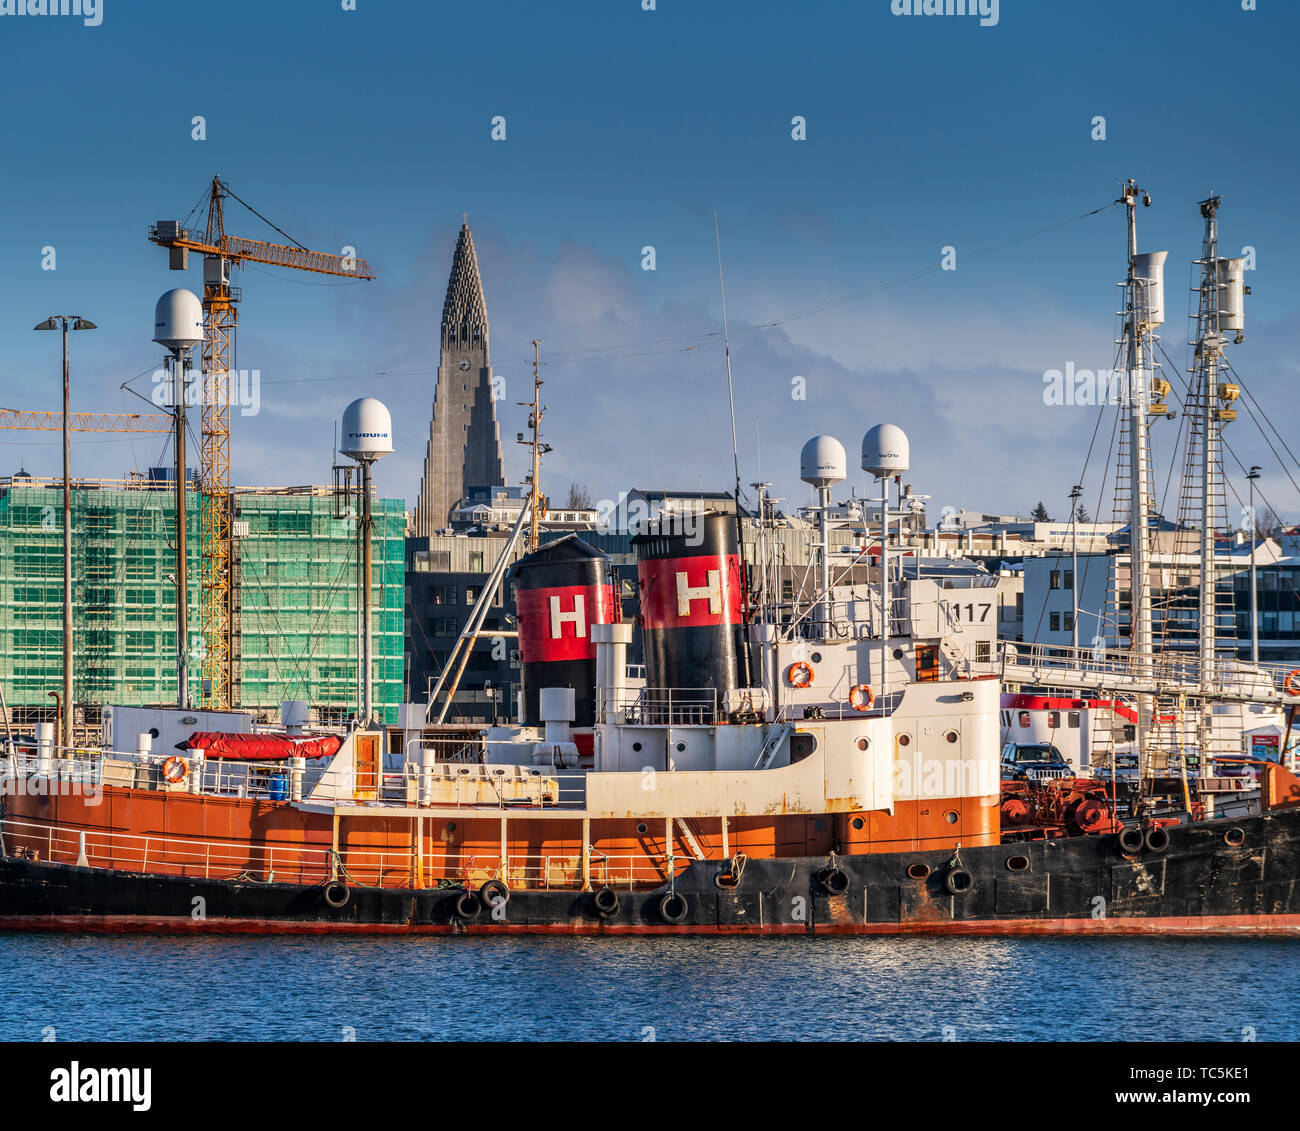 Reykjavik Harbor and Construction, Reykjavik, Iceland Stock Photo